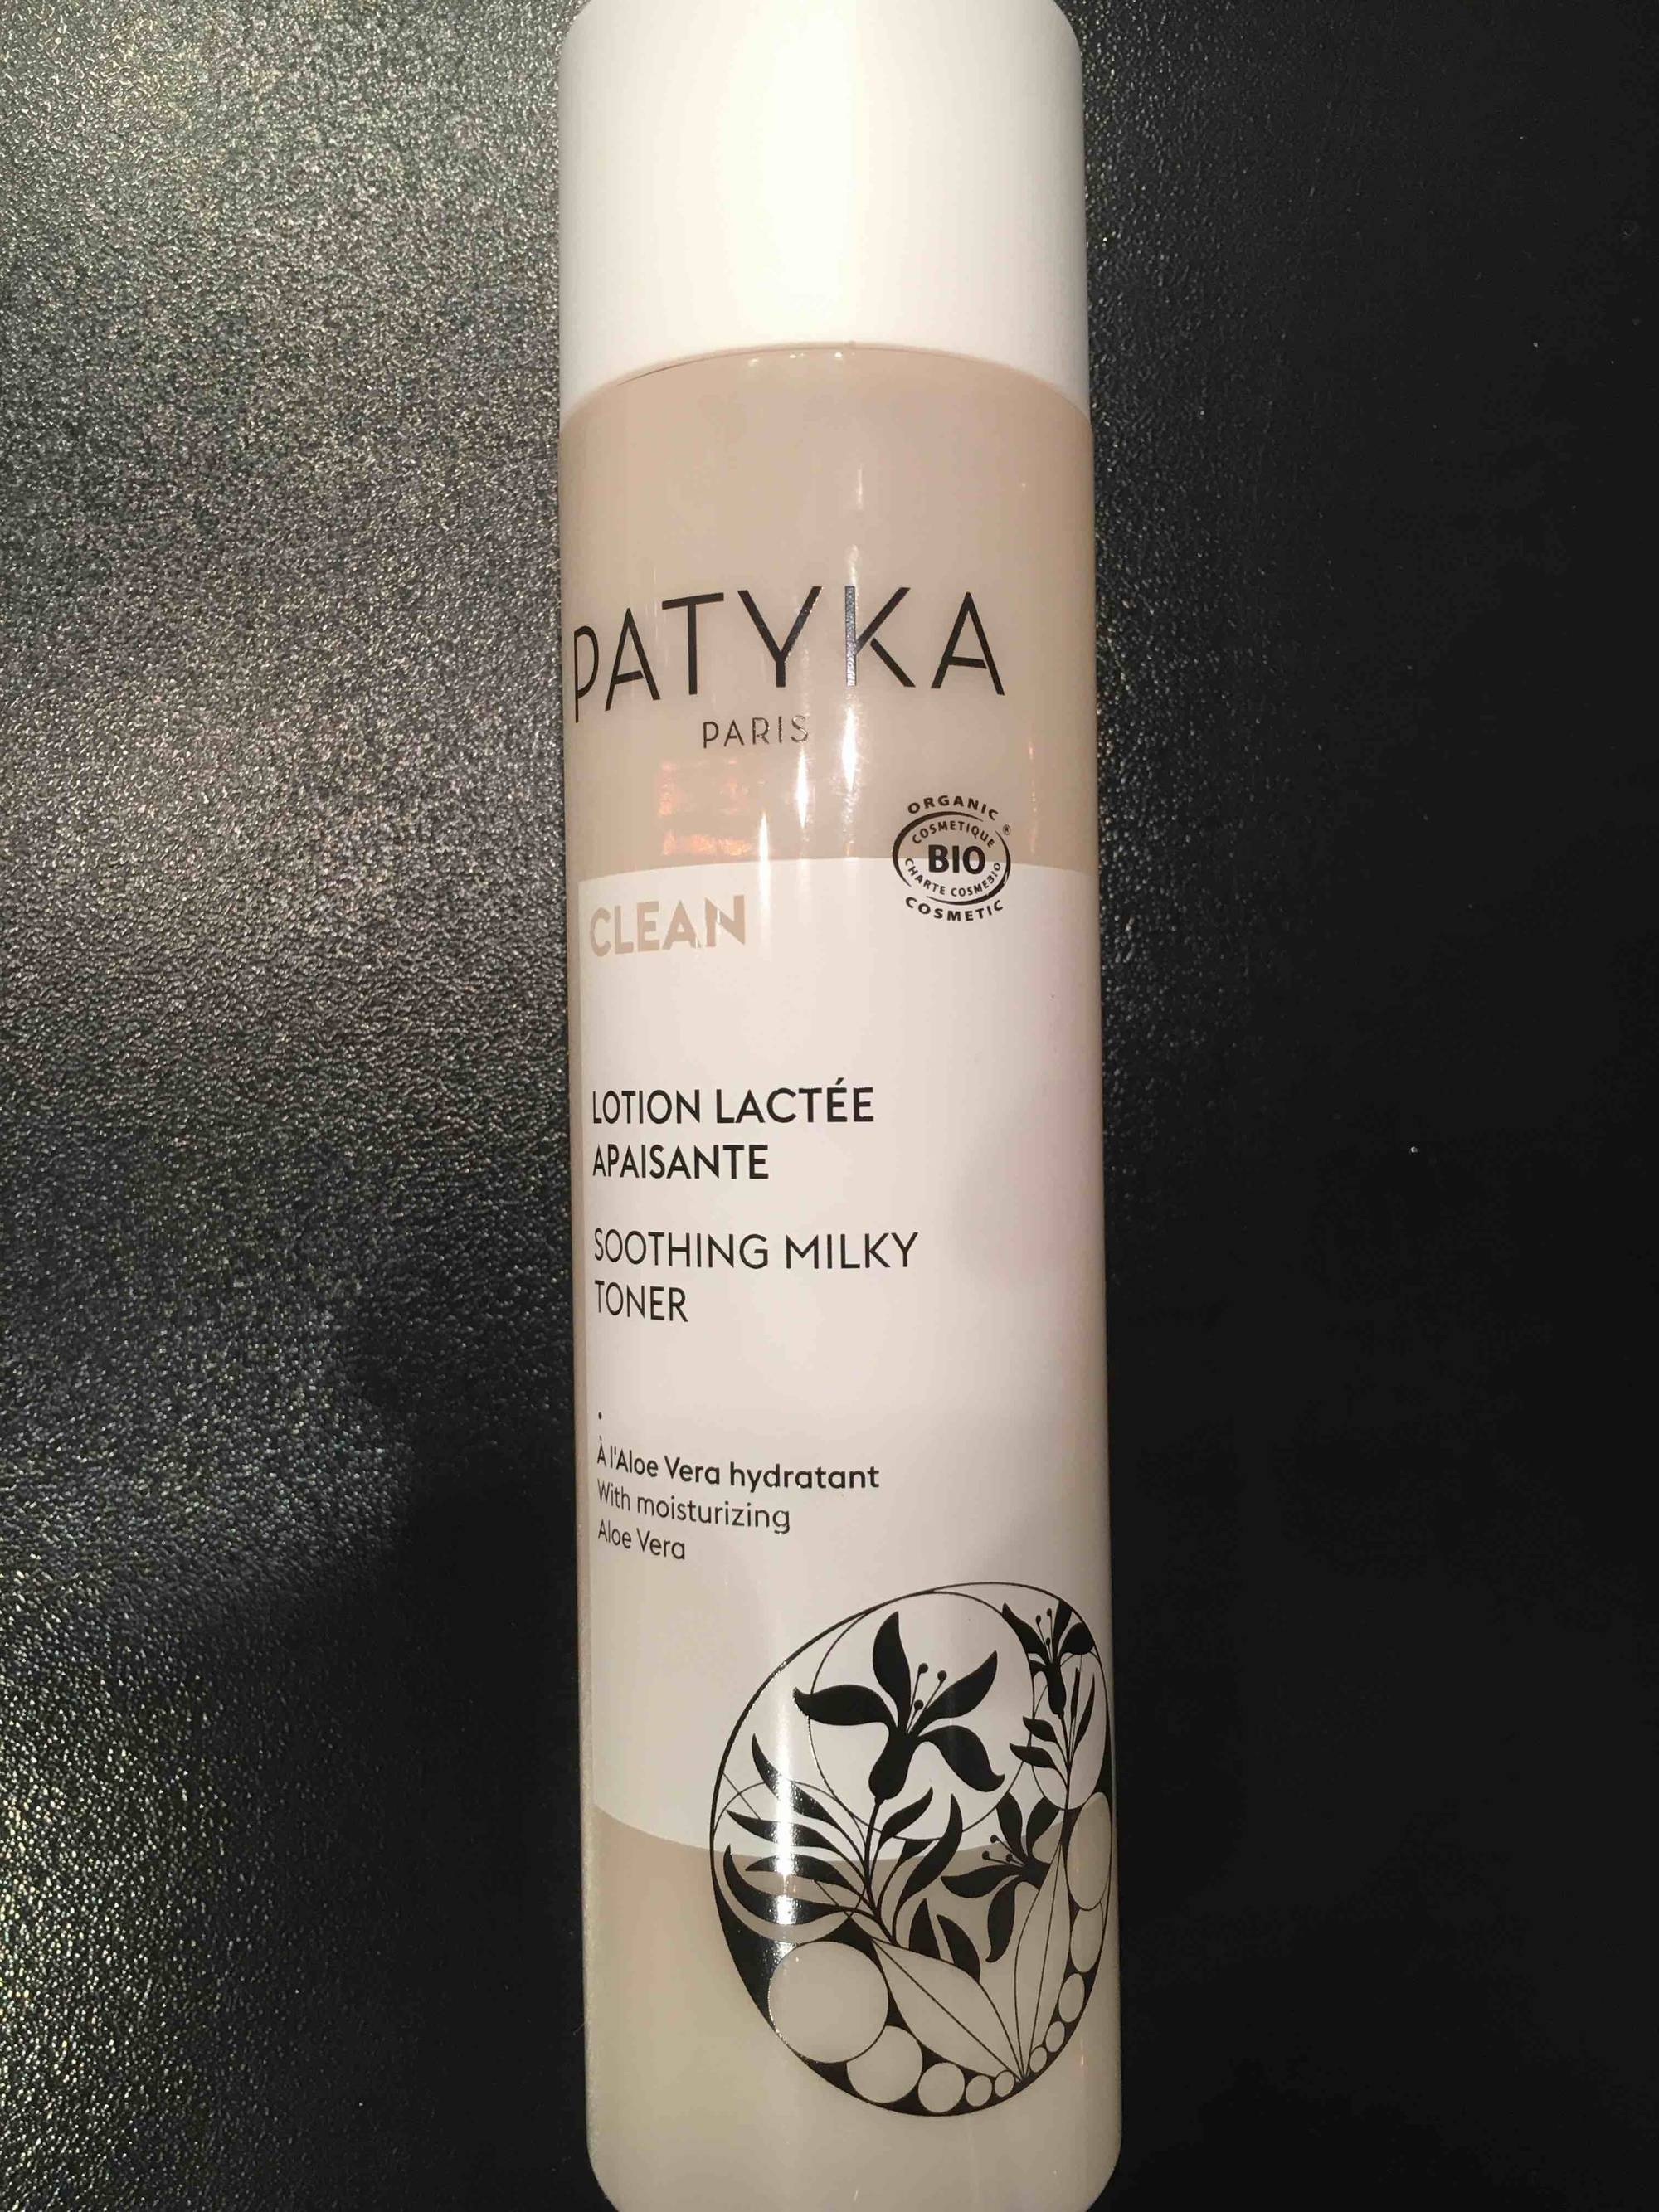 PATYKA - Clean - Lotion lactée apaisante